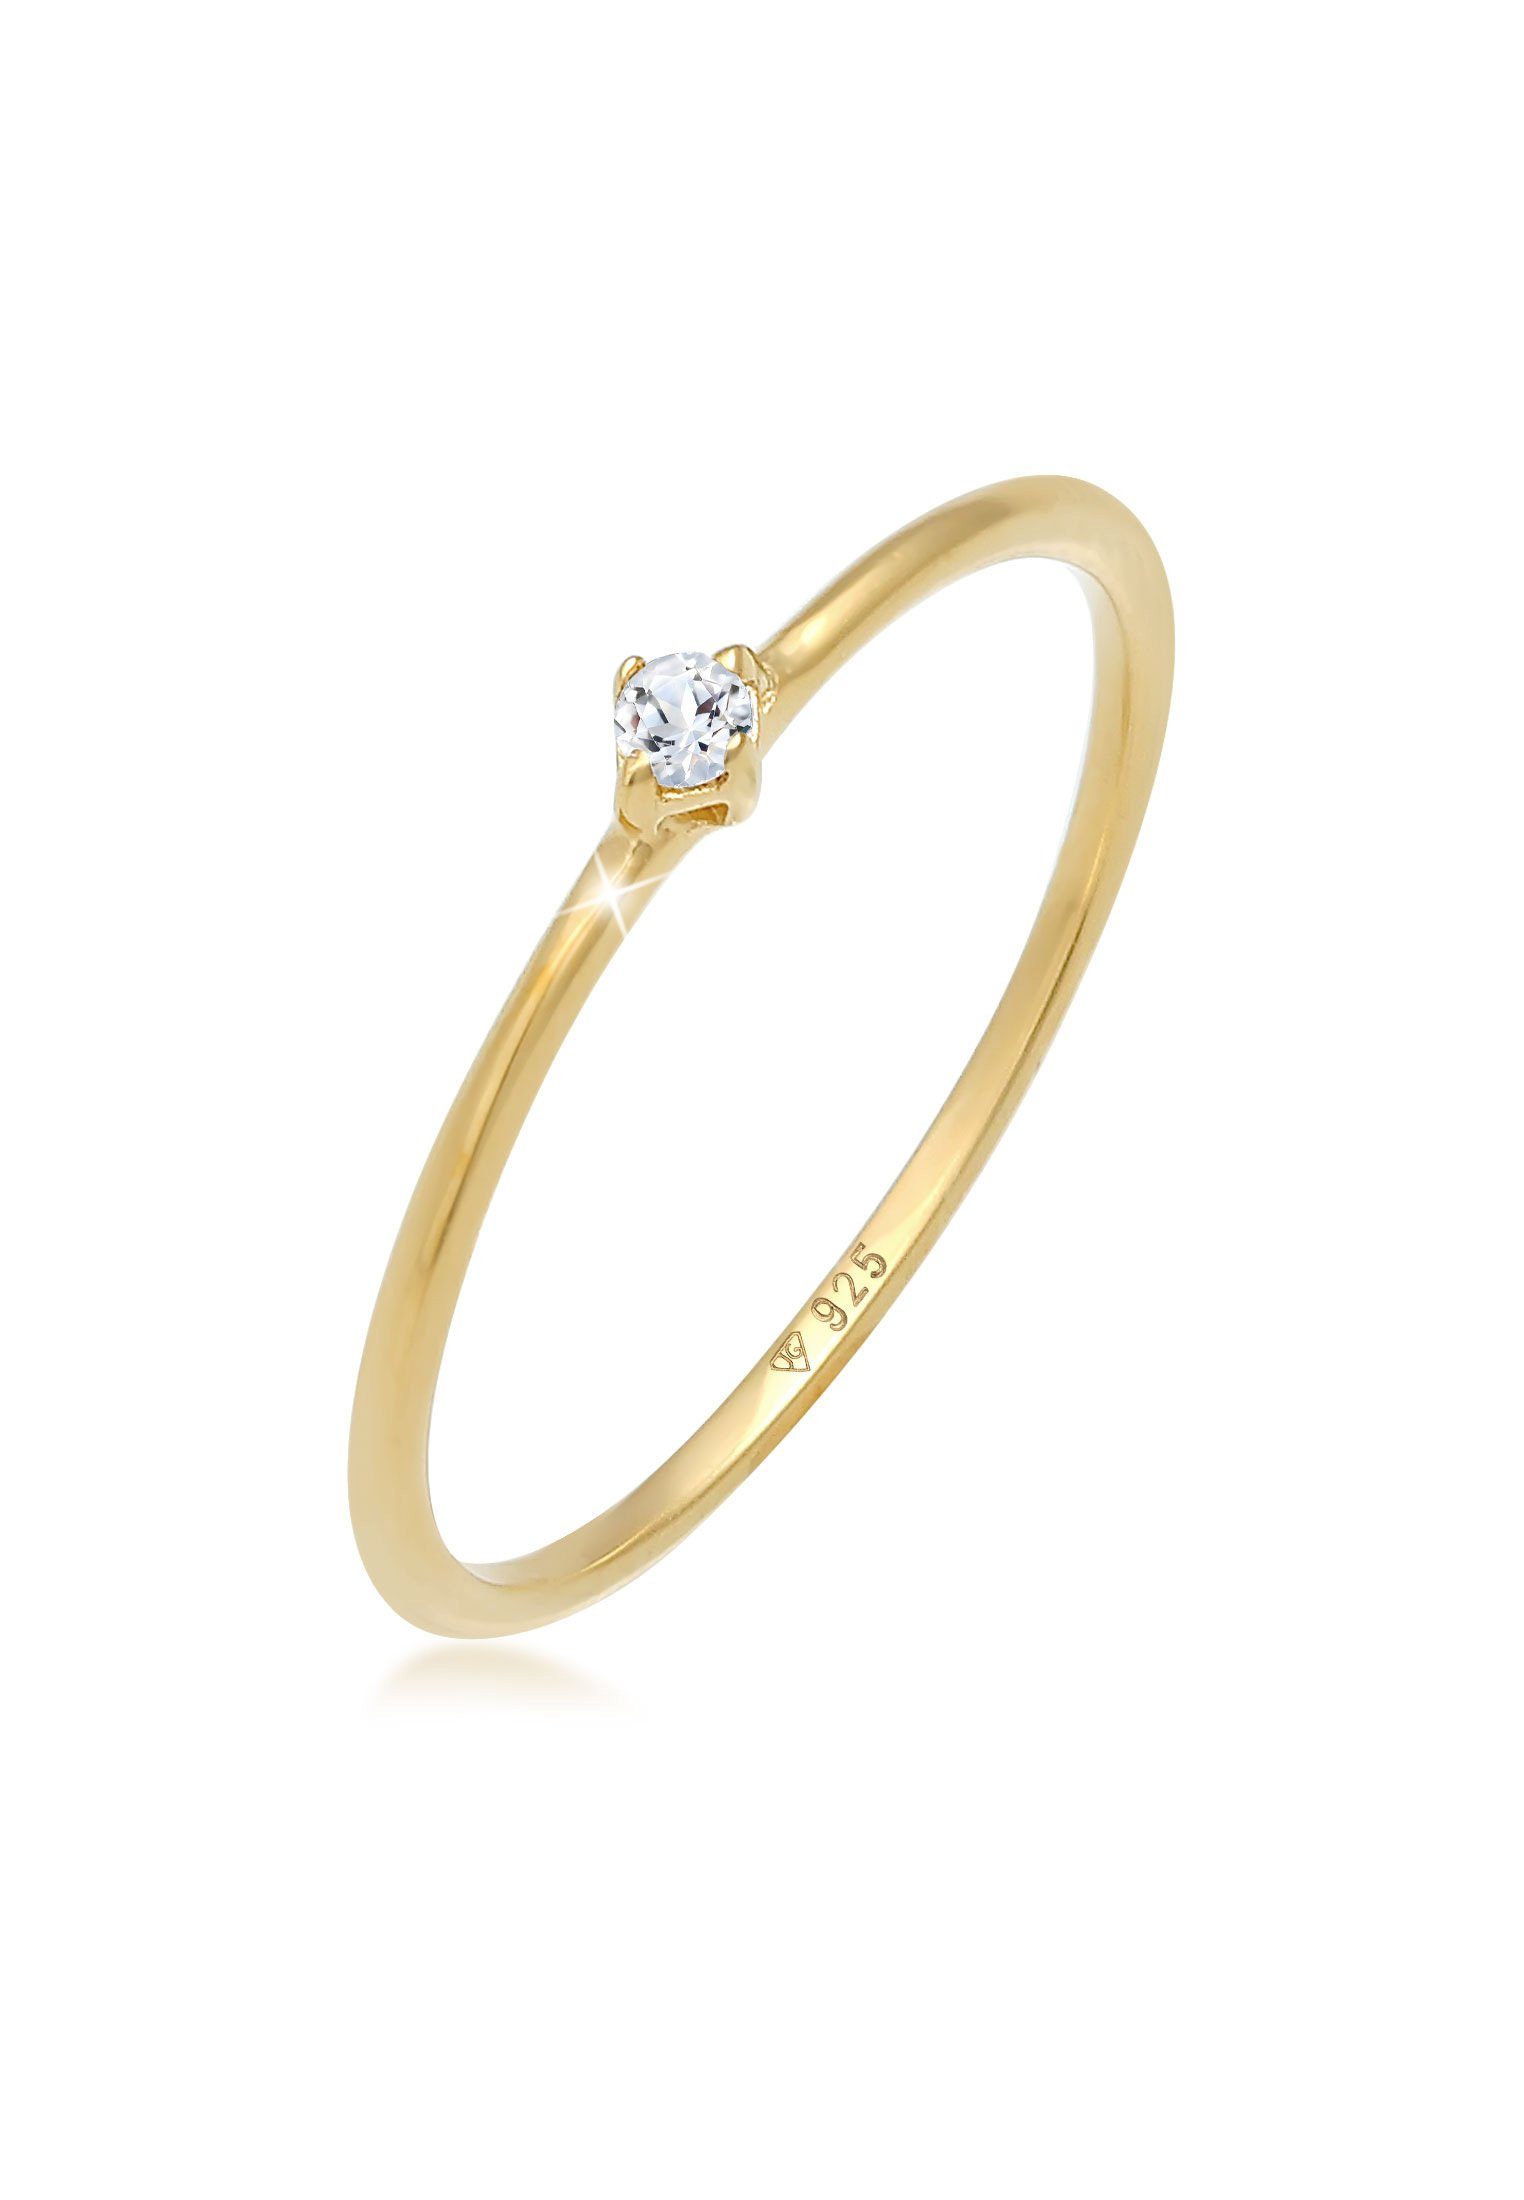 Verlobung Frauen Silber, Solitär 925 Stapelring Zauberhafter Design Ring für Verlobungsring im zarten Premium Elli Topas